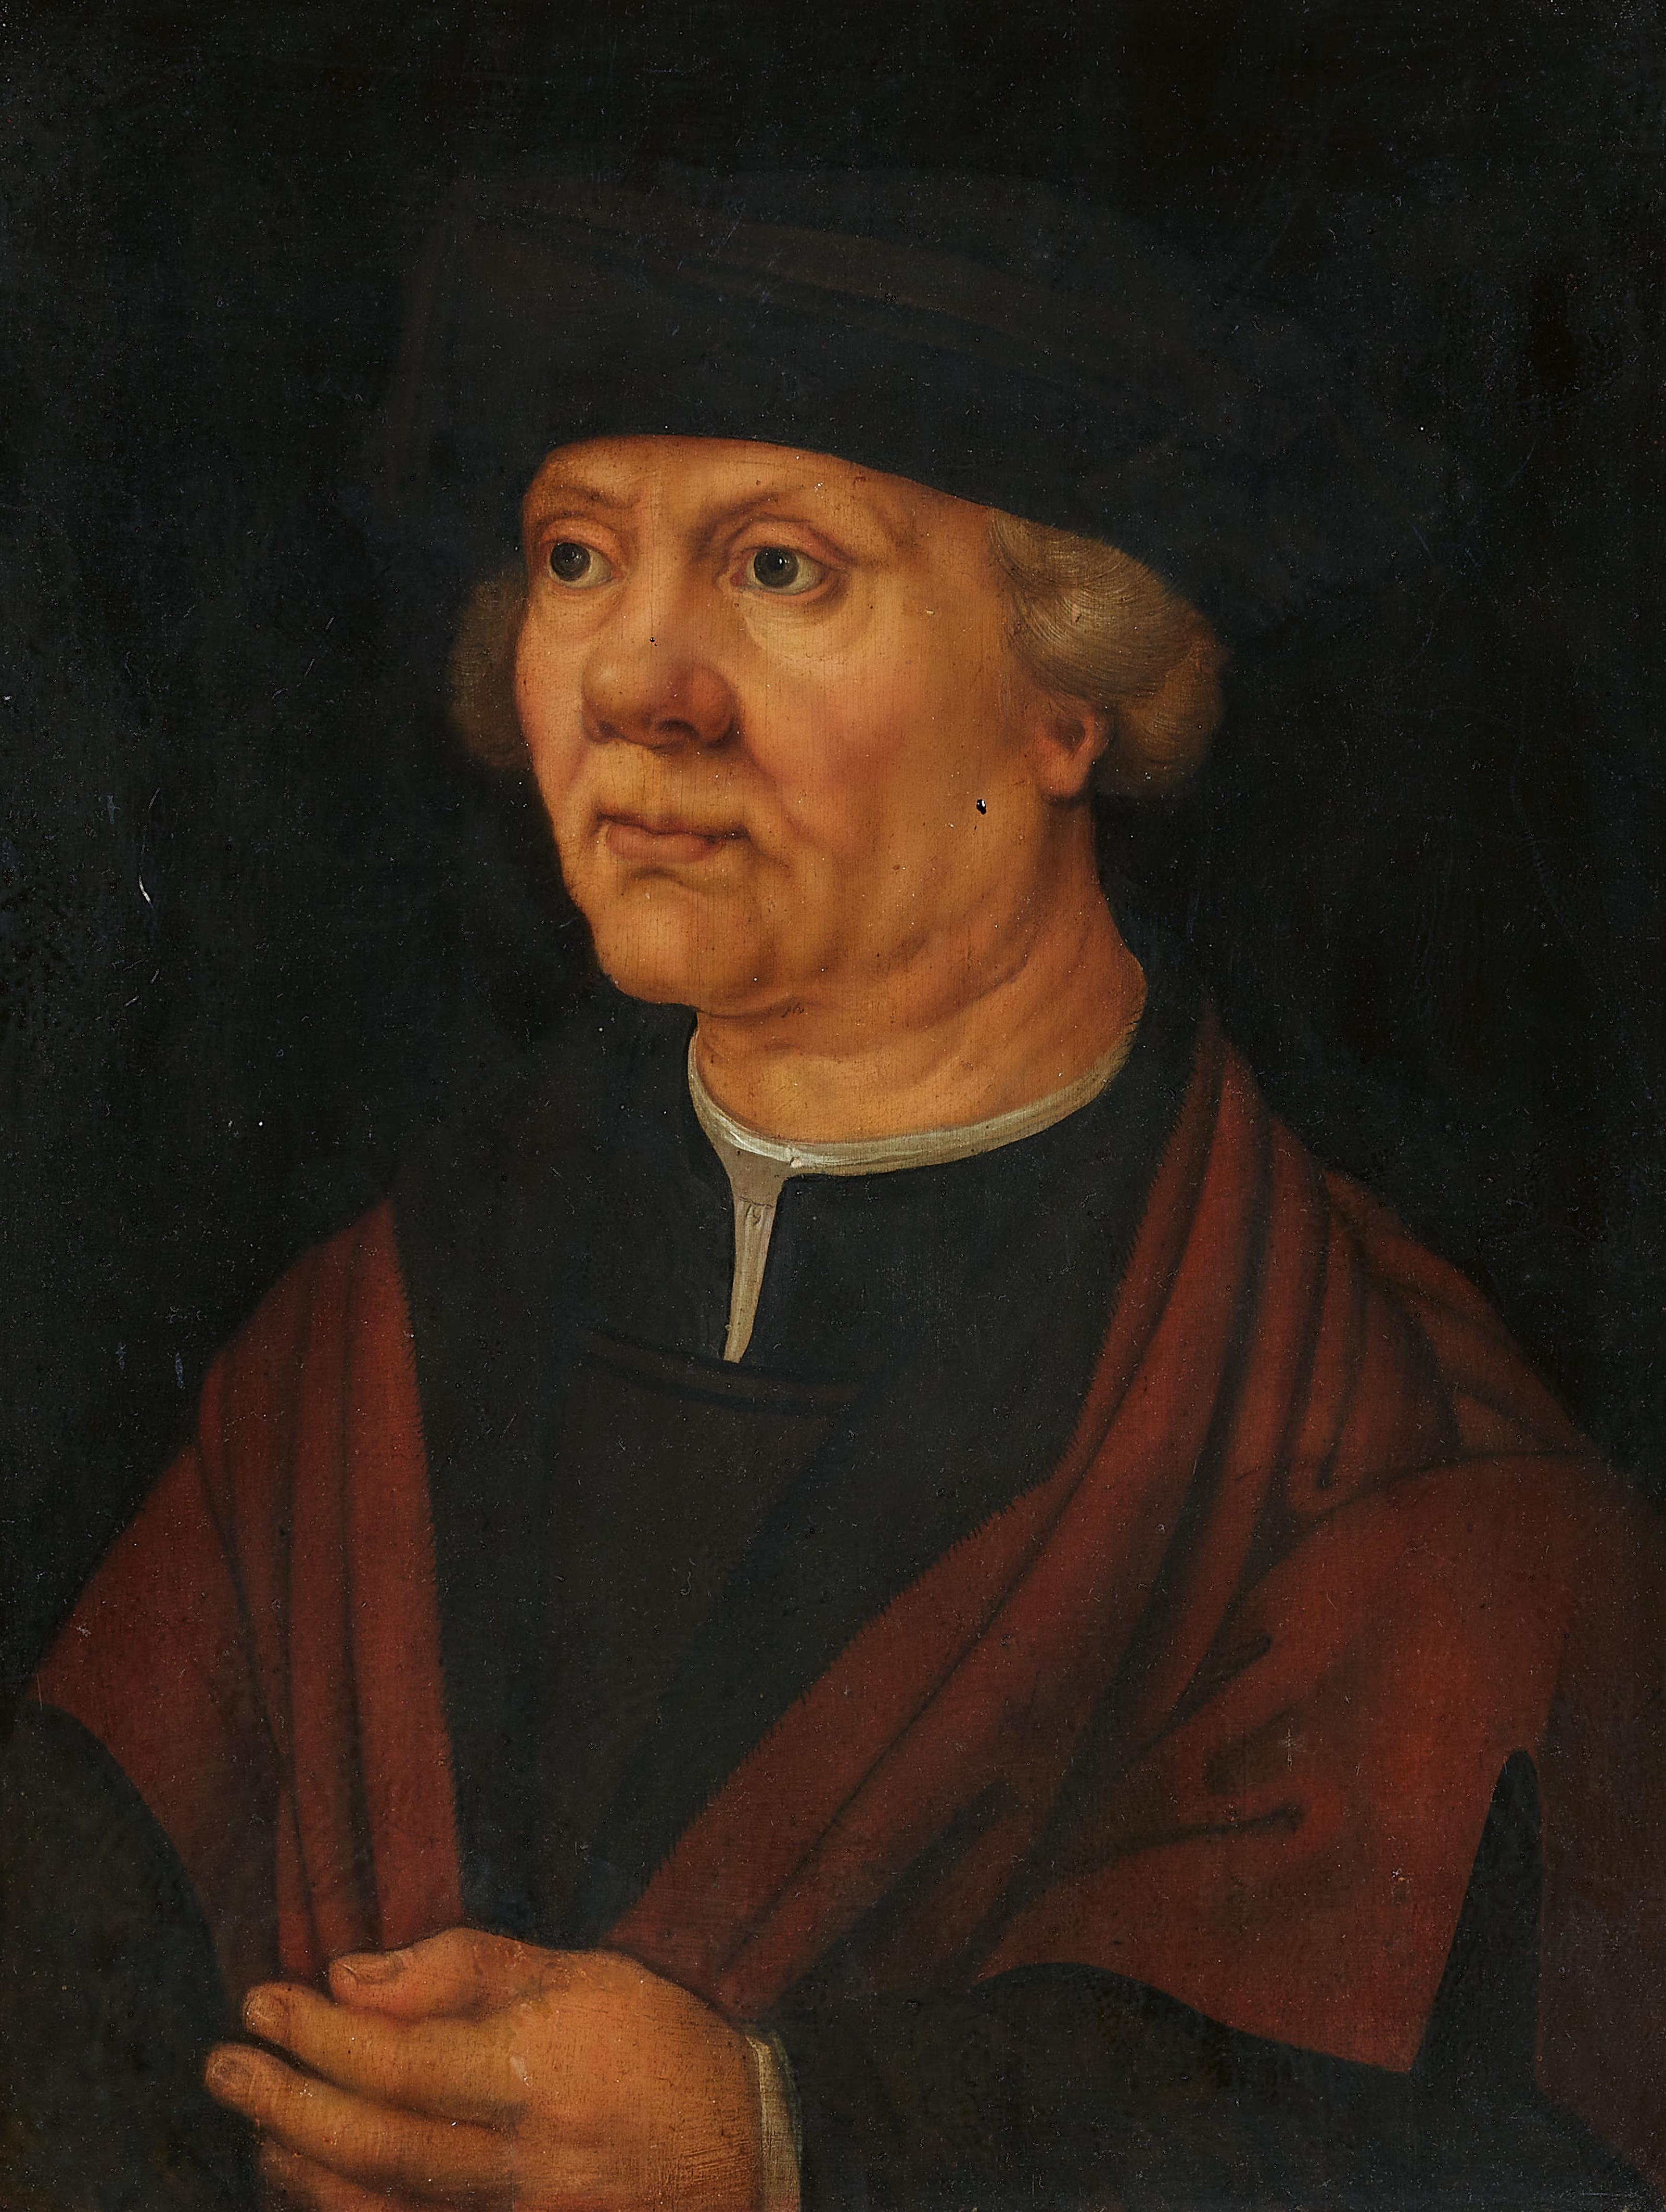 Süddeutscher Meister 2. Viertel 16. Jahrhundert - Portrait eines Mannes - image-1